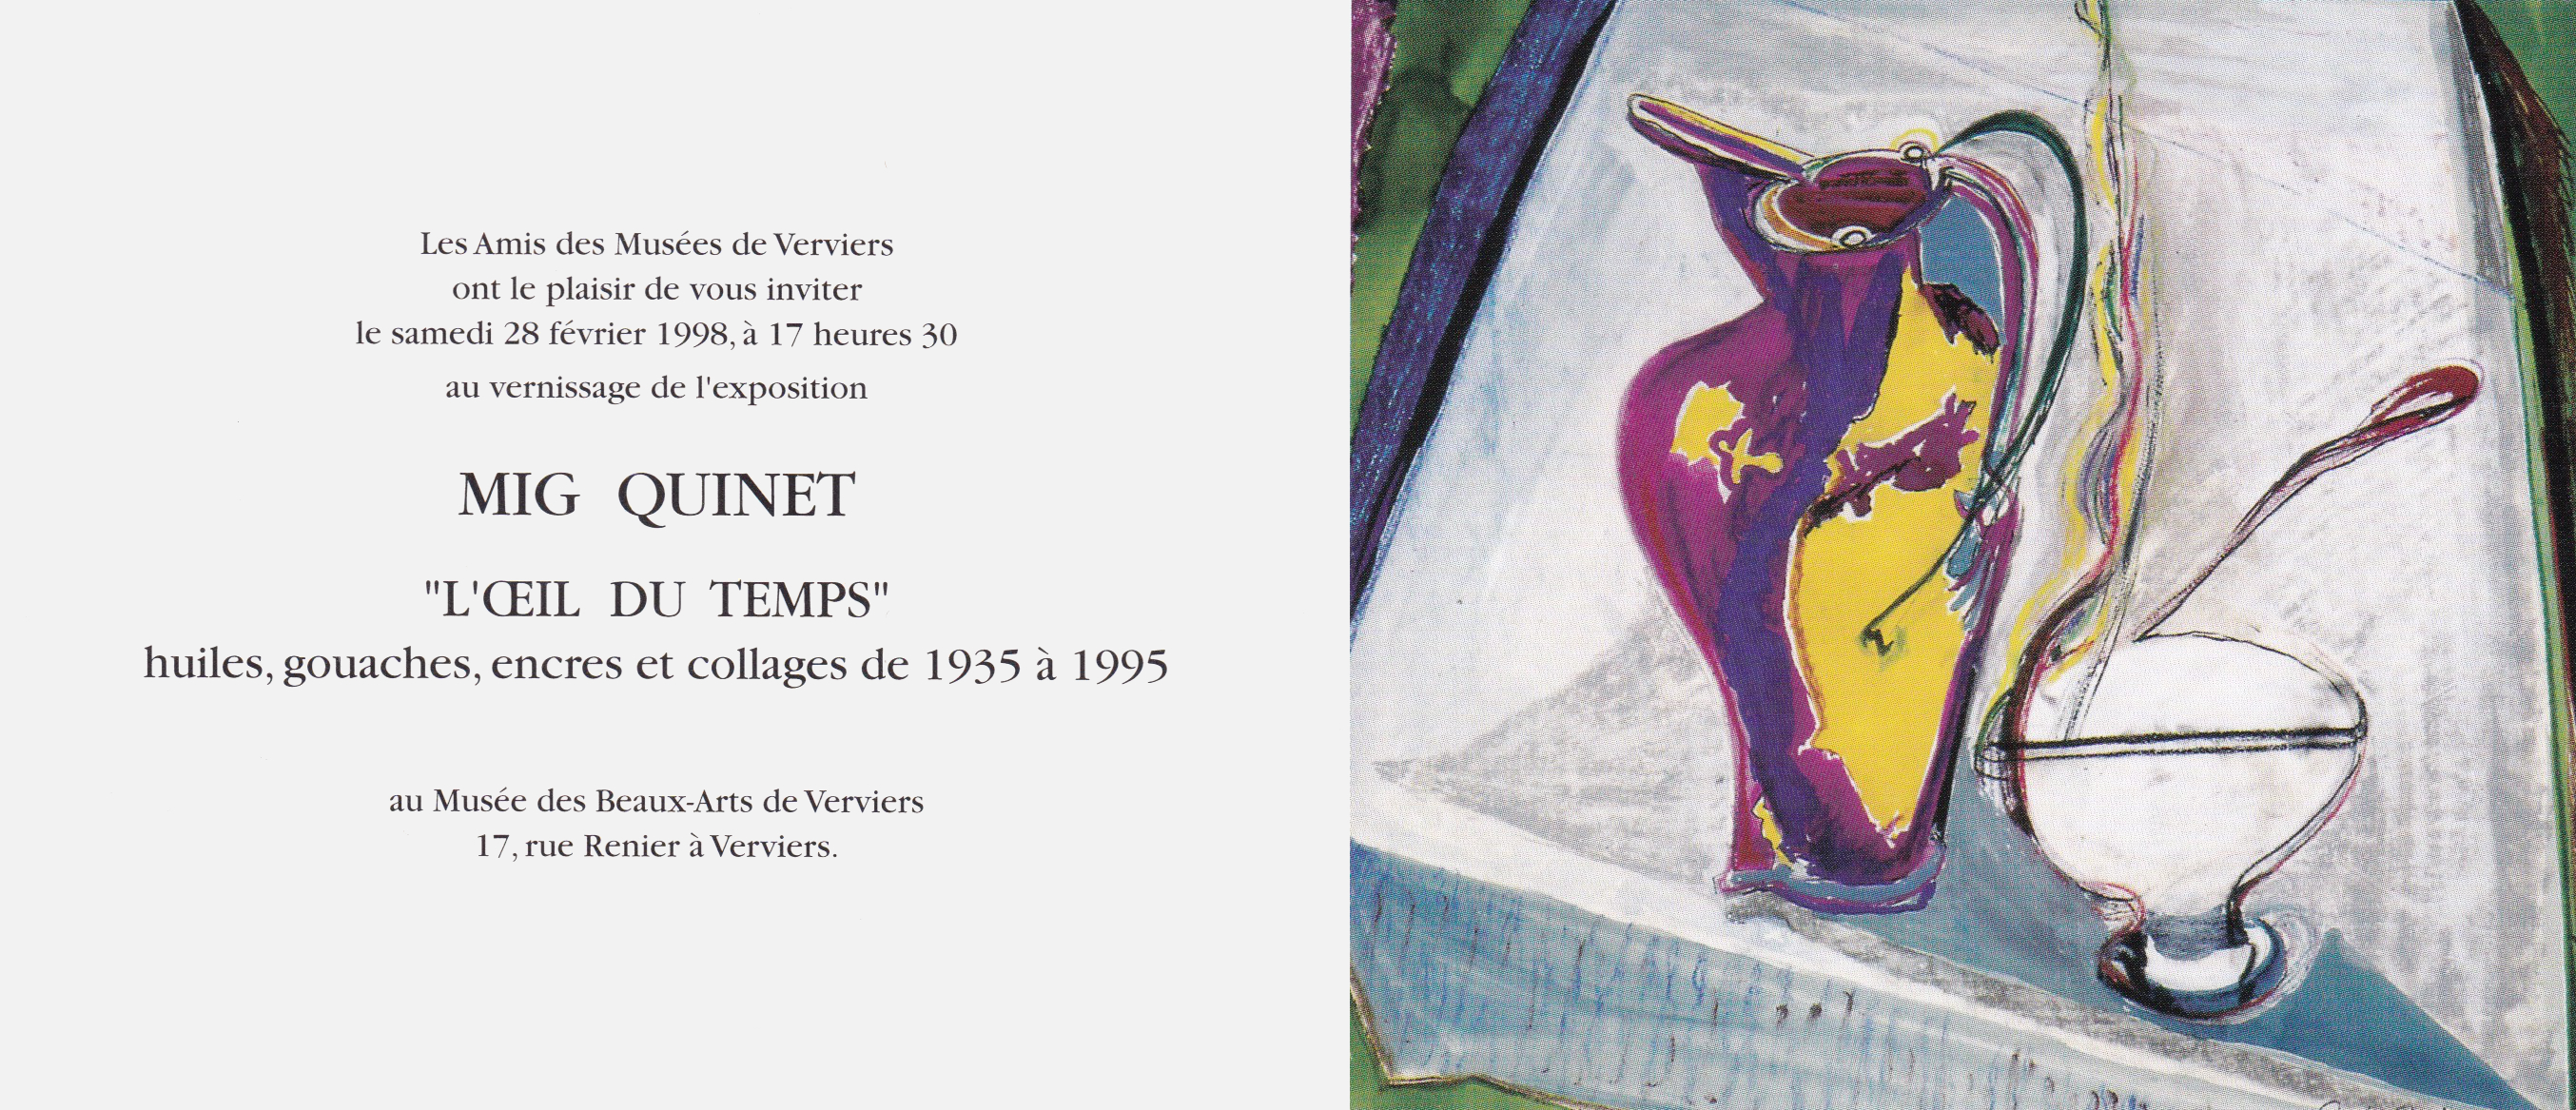 Mig Quinet, exposition personnelle l’œil du temps, musée des beaux-arts de verviers, 1998